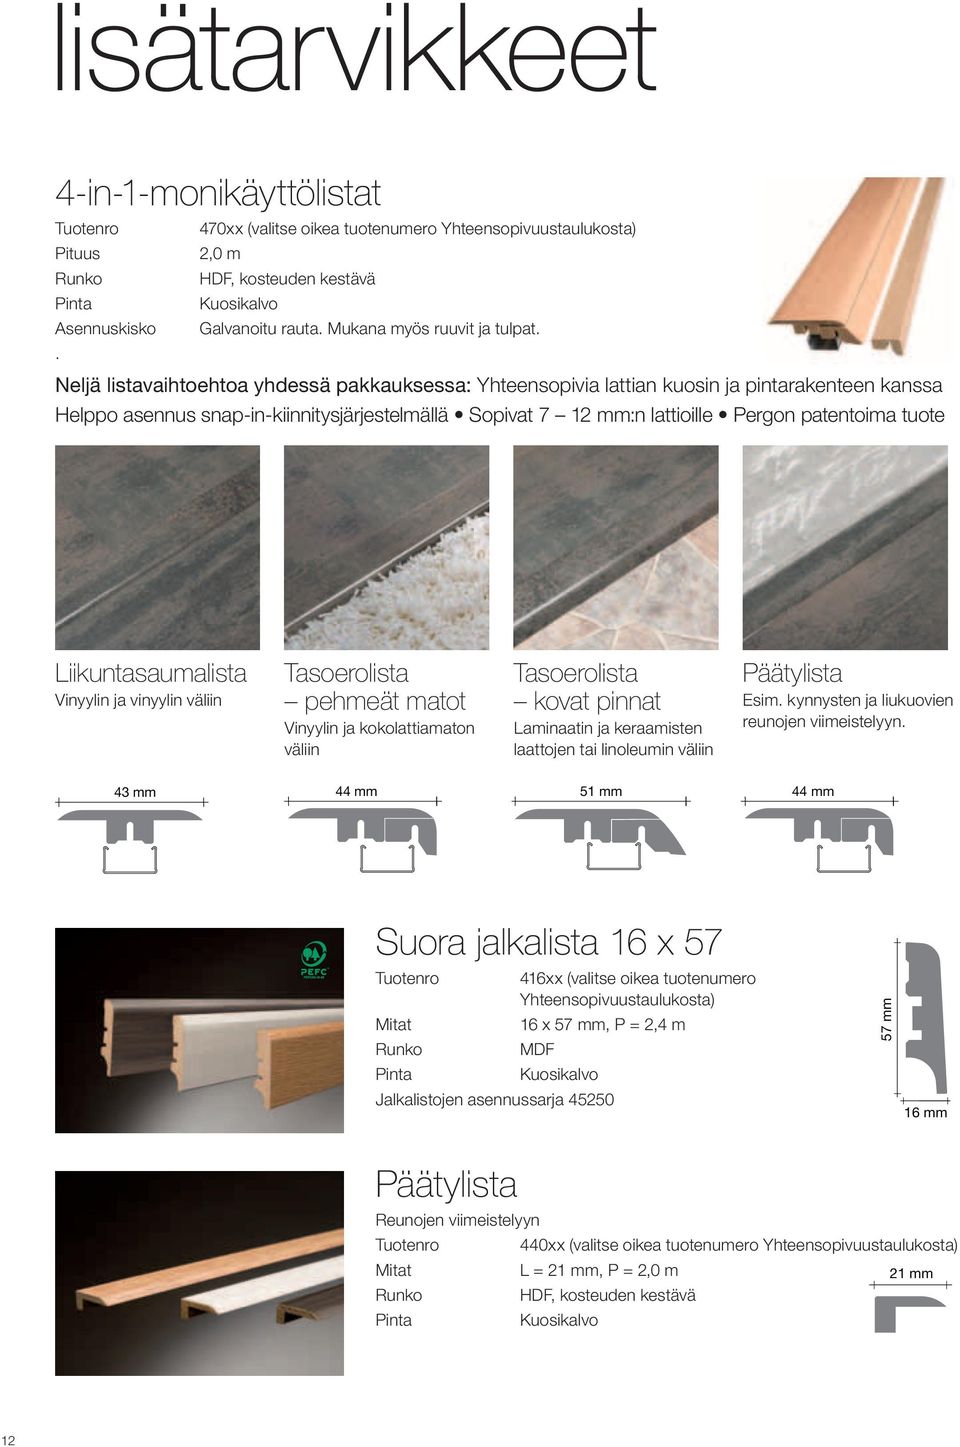 . Neljä listavaihtoehtoa yhdessä pakkauksessa: Yhteensopivia lattian kuosin ja pintarakenteen kanssa Helppo asennus snap-in-kiinnitysjärjestelmällä Sopivat 7 12 mm:n lattioille Pergon patentoima